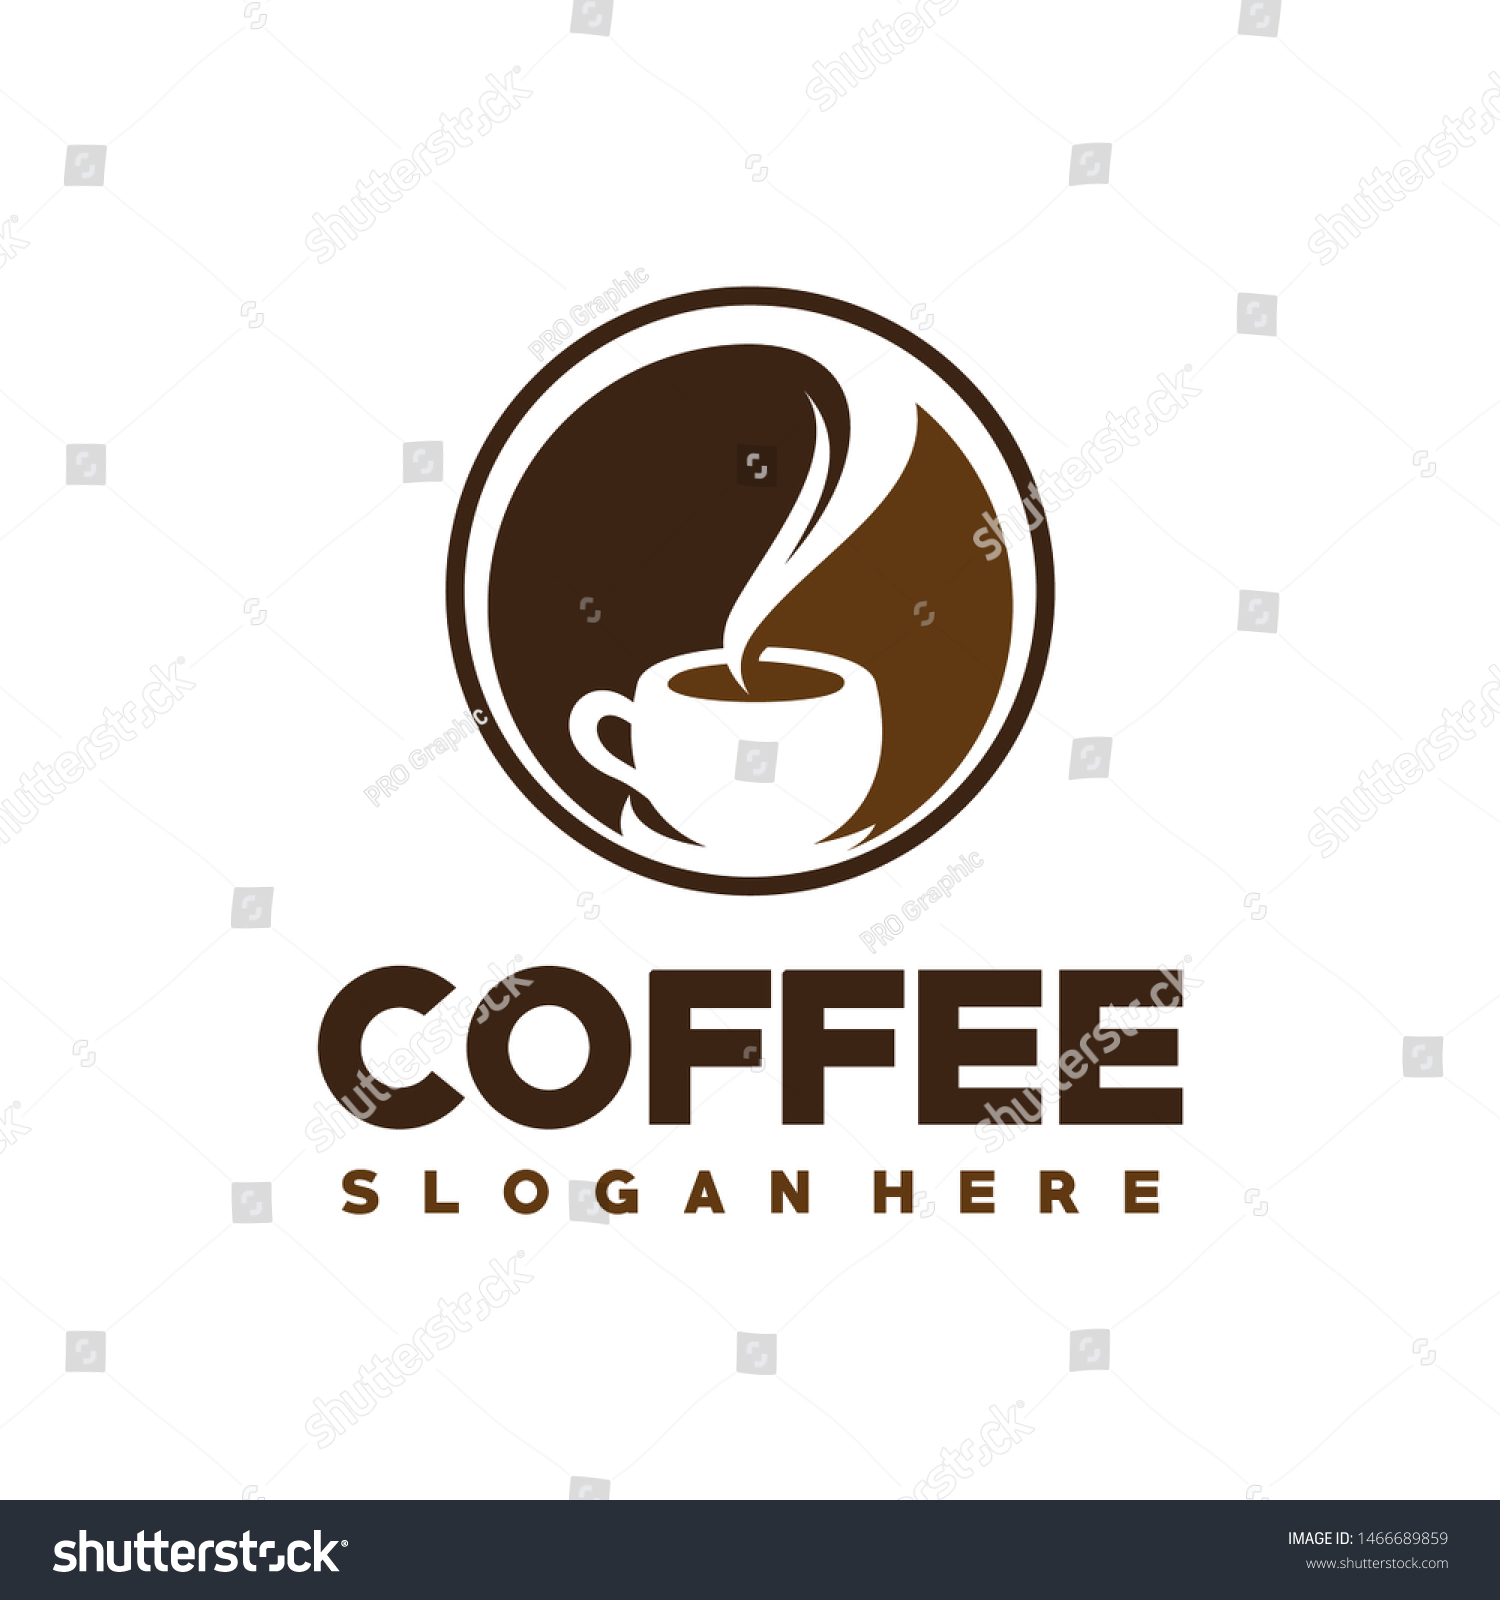 Coffee Coffe Shop Cafe Logo Design Stock Vector Royalty Free